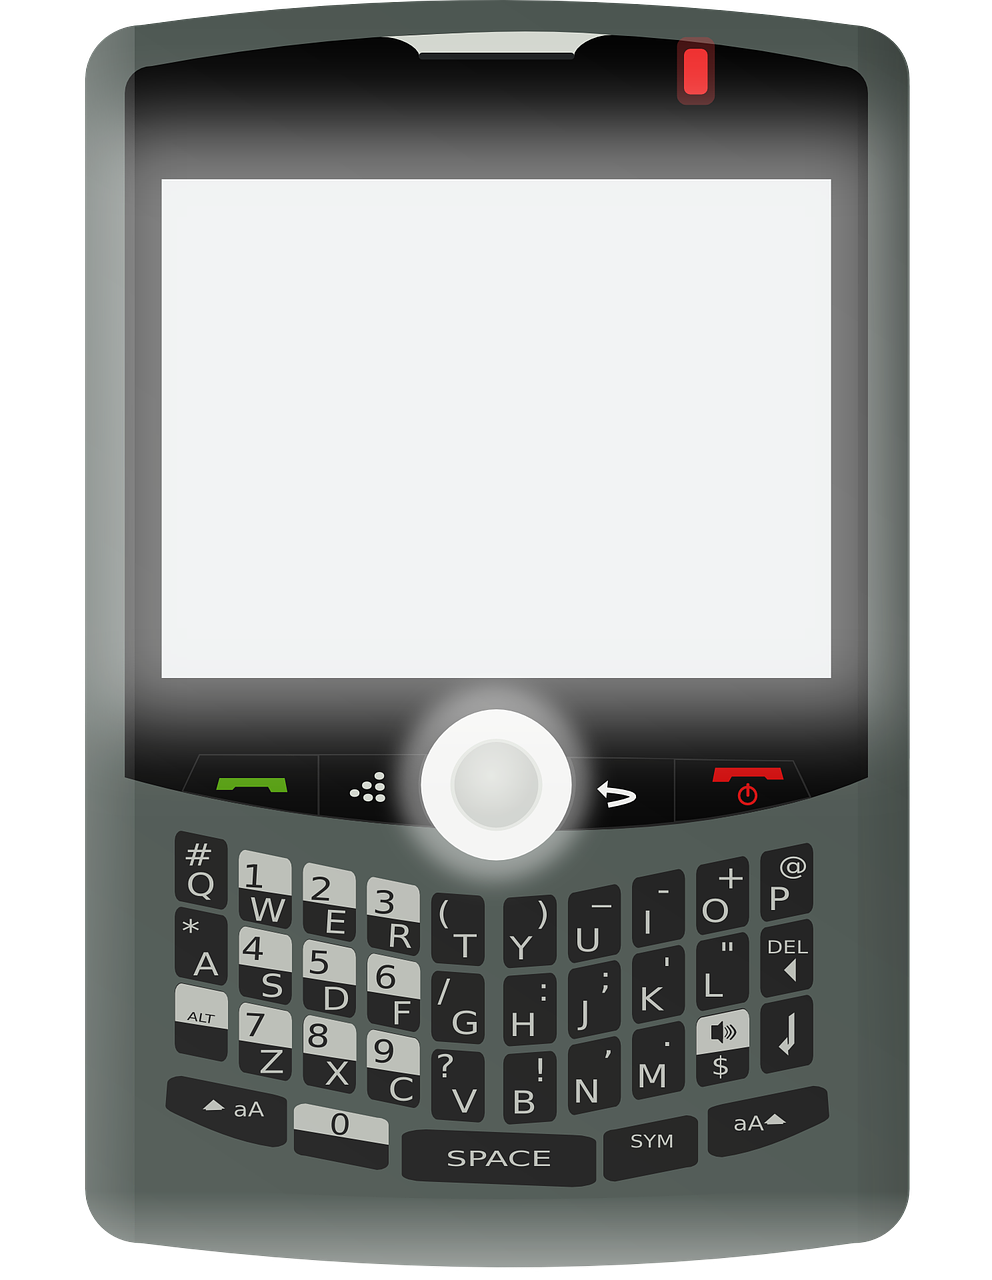 expert evaluations of blackberry phones 2